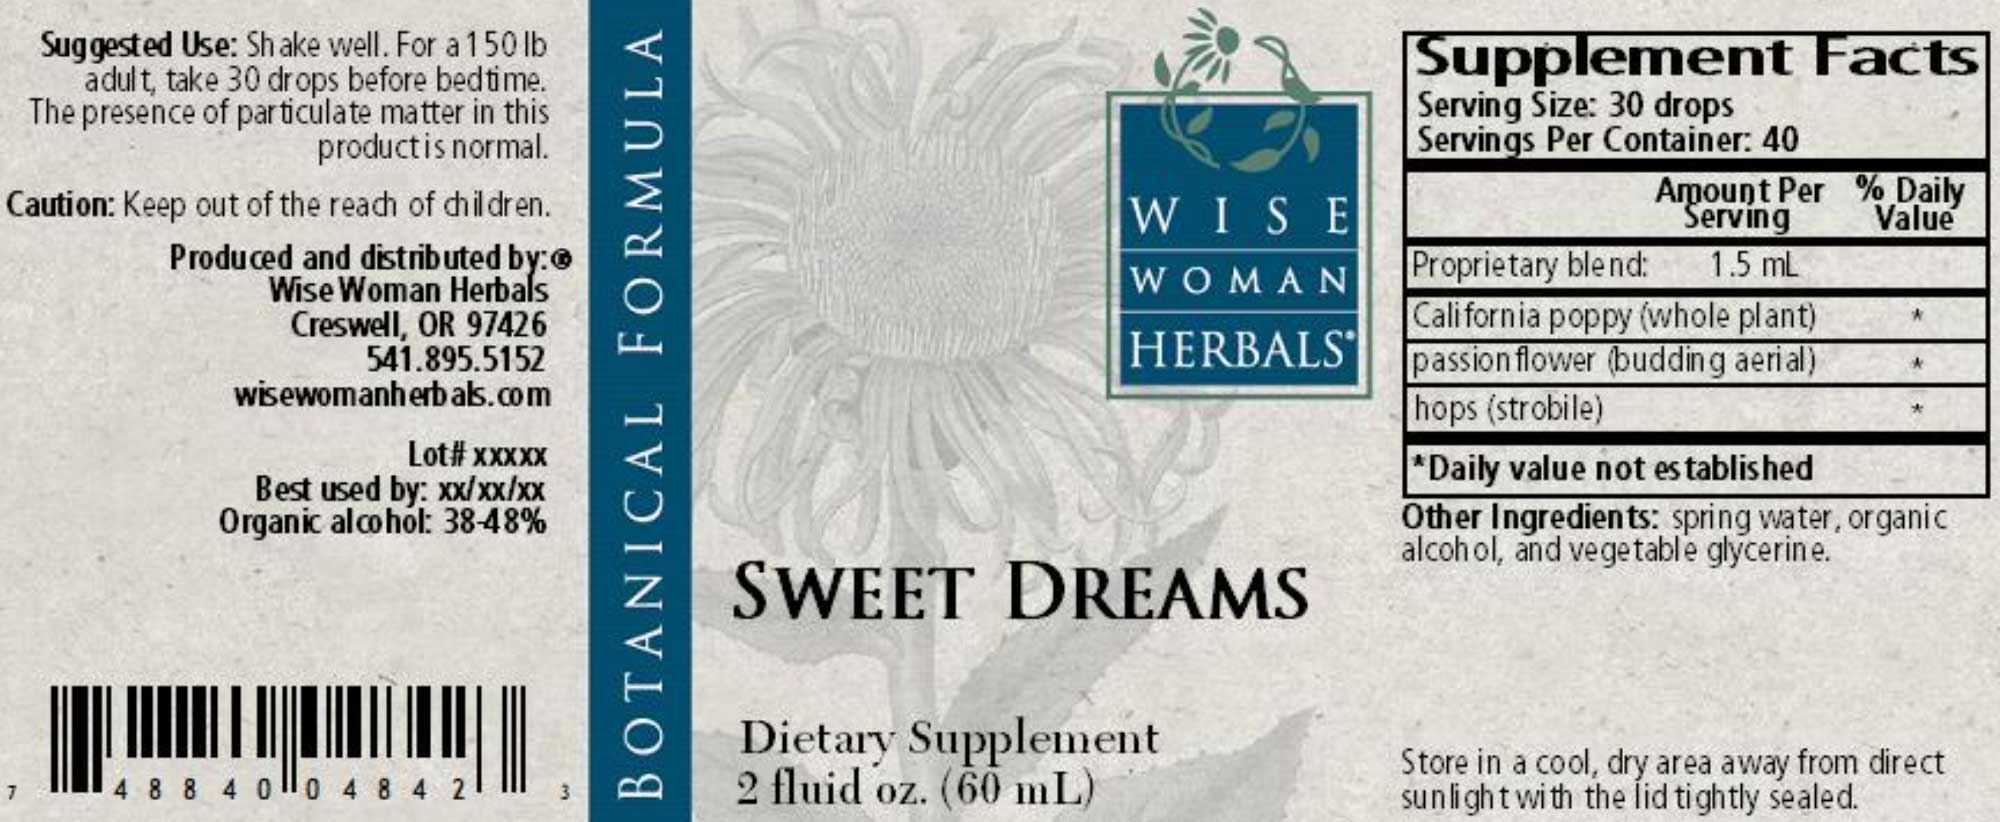 Wise Woman Herbals Sweet Dreams Label